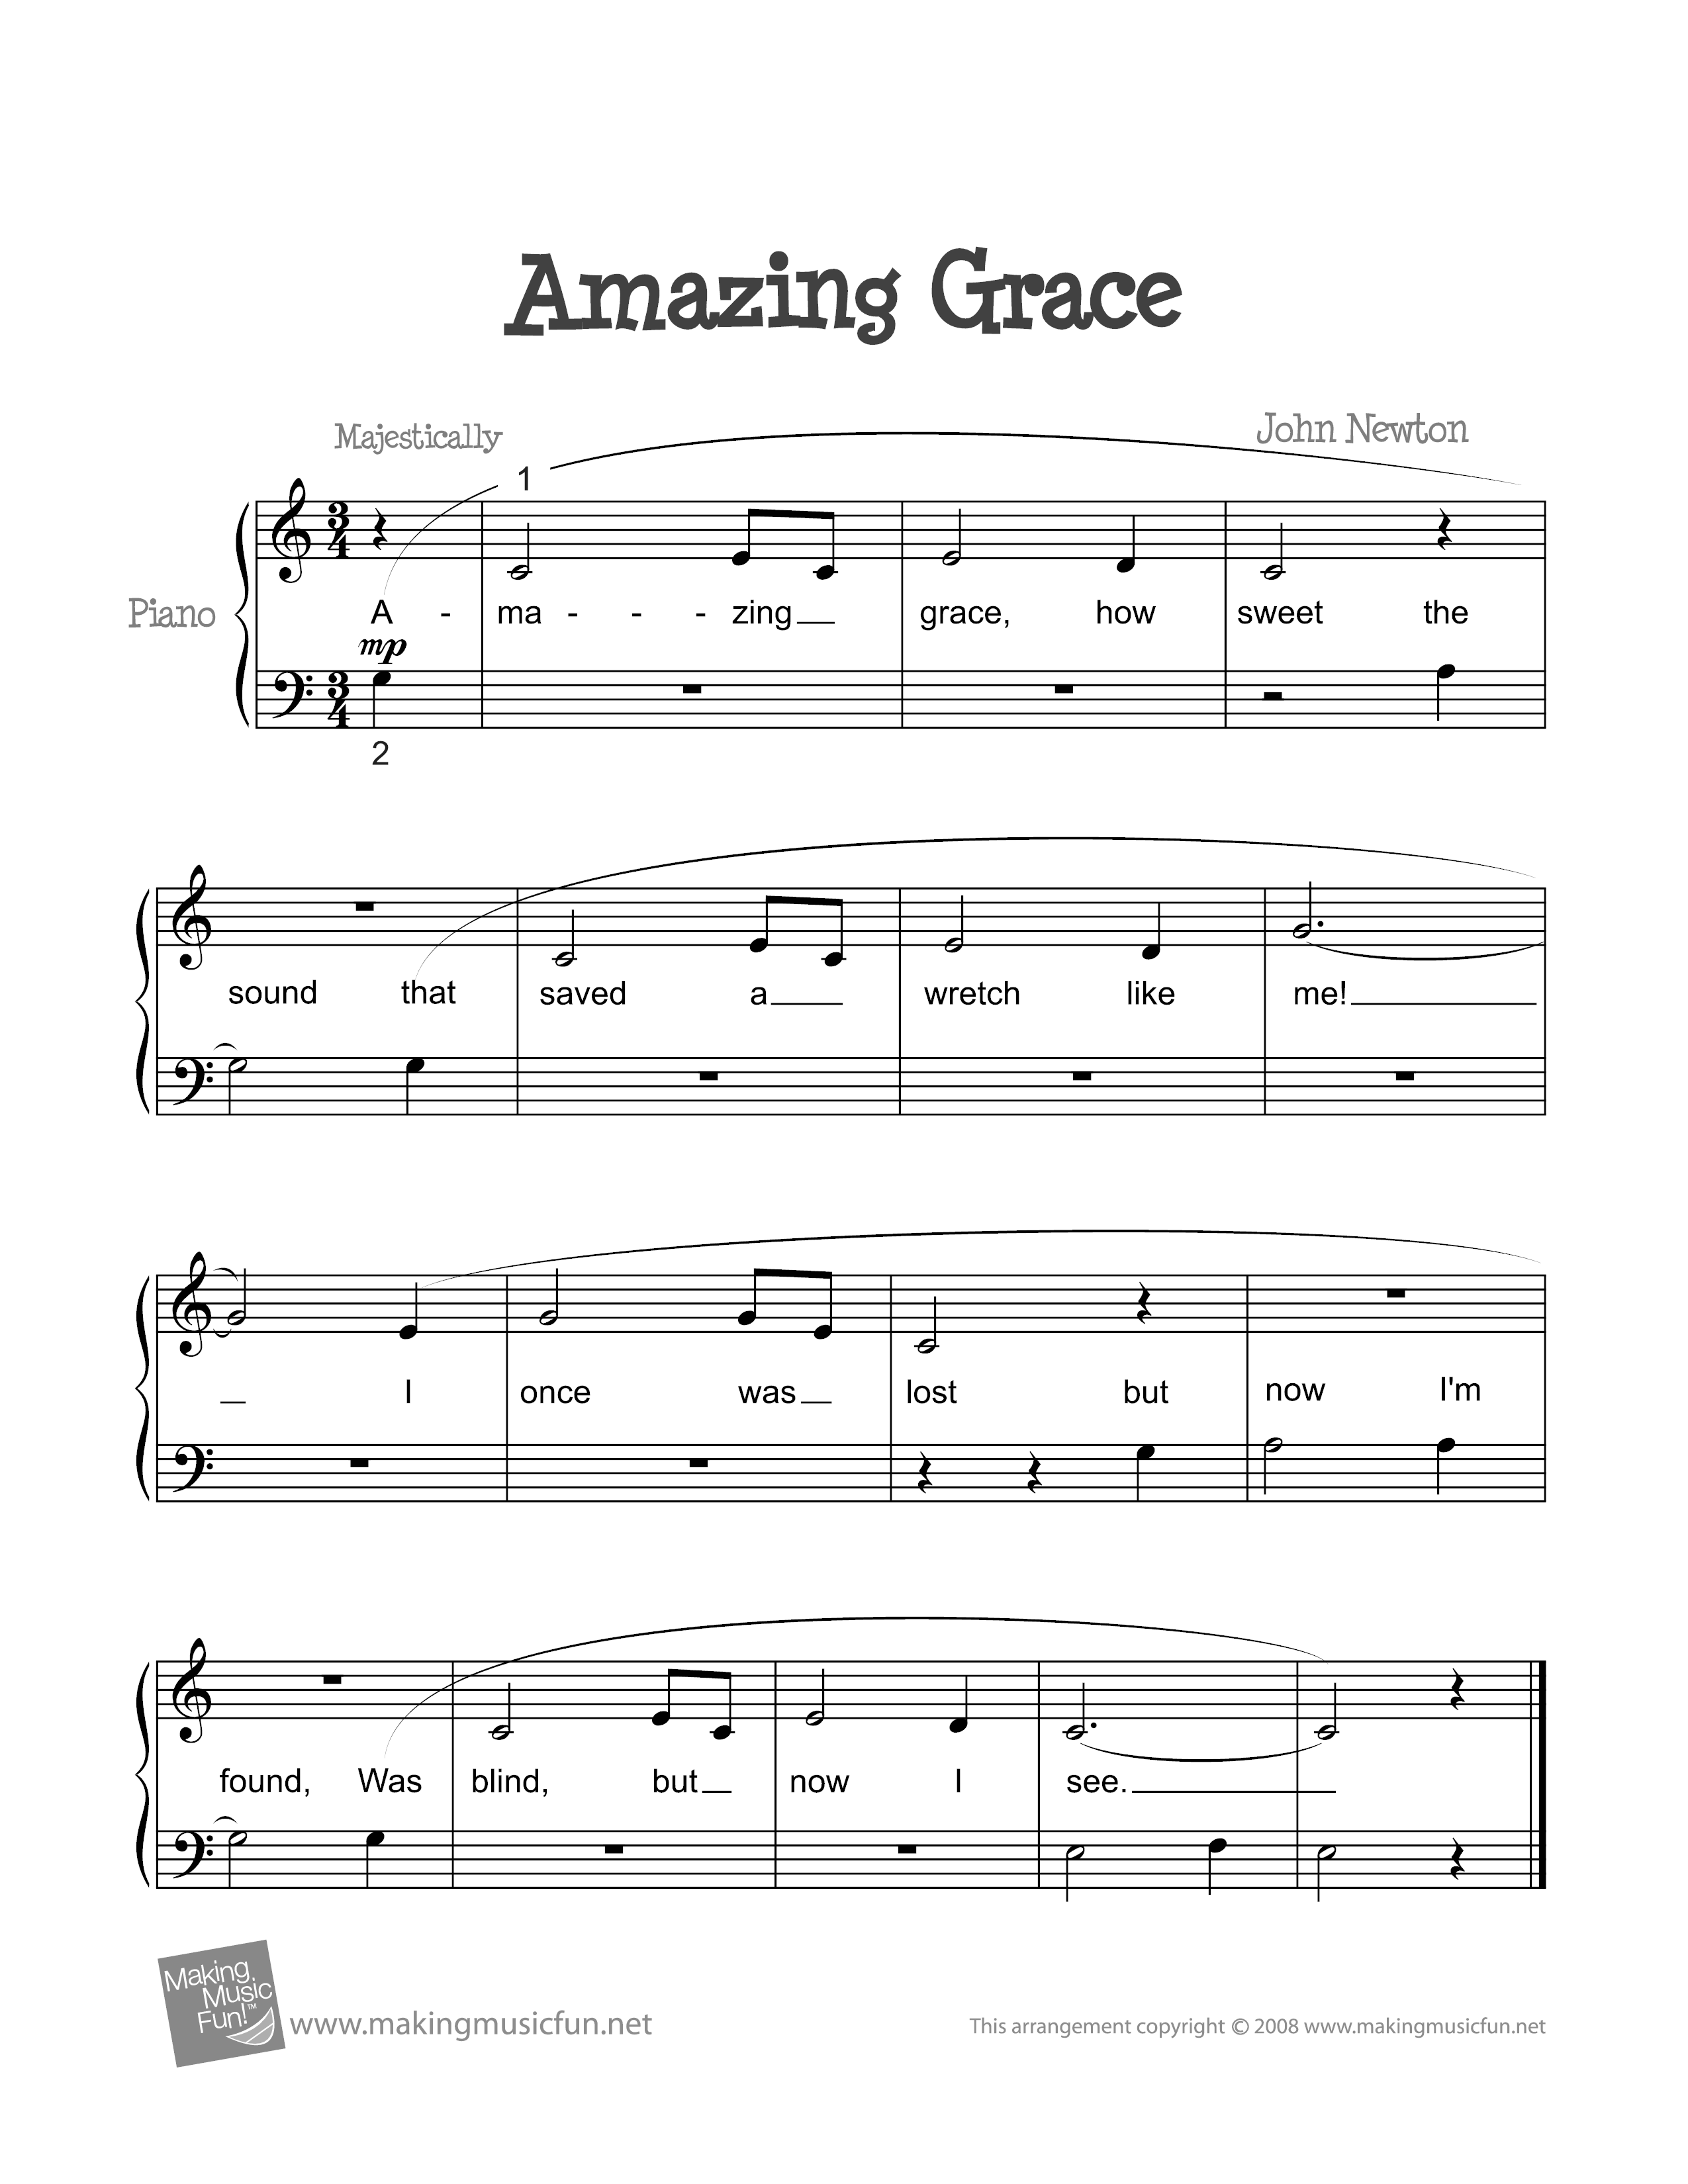 Amazing Grace Score